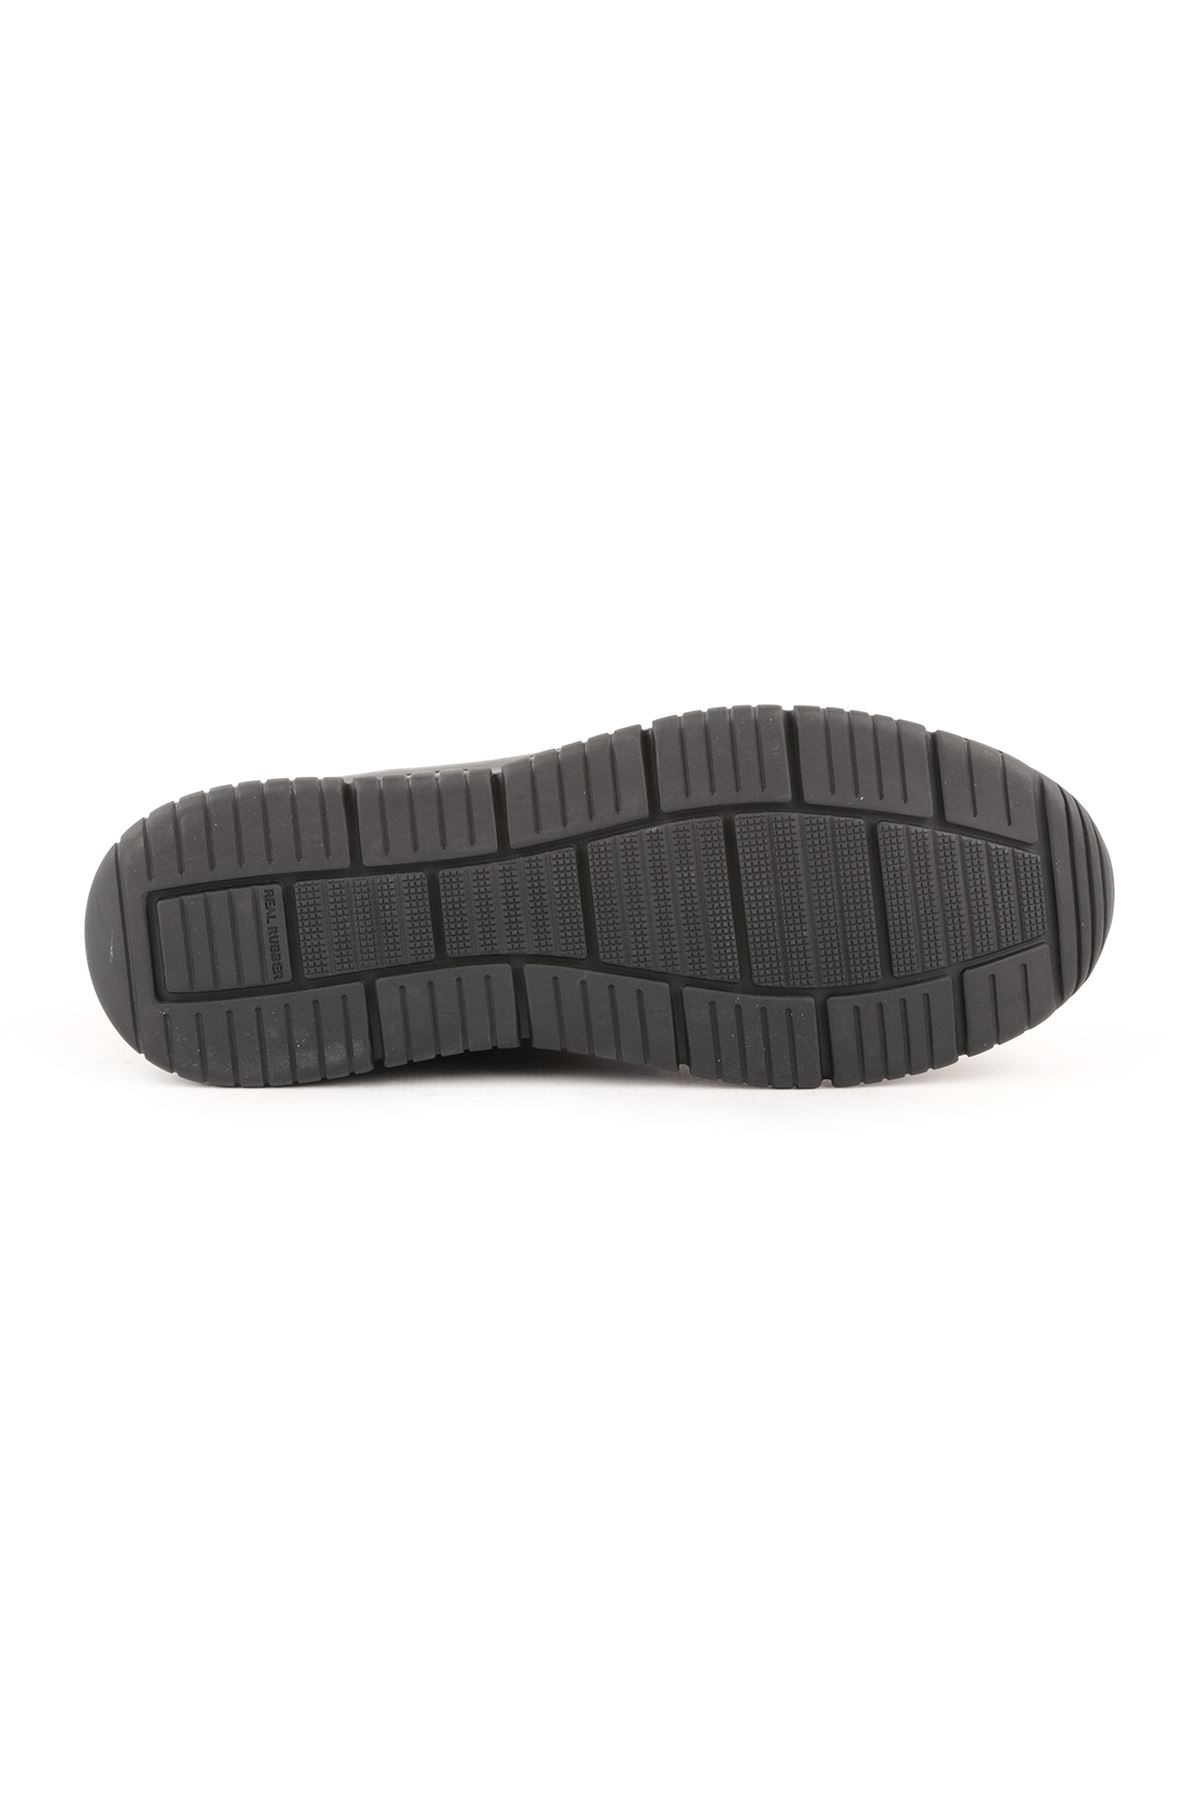 Libero L3891 Siyah Erkek Günlük Ayakkabı